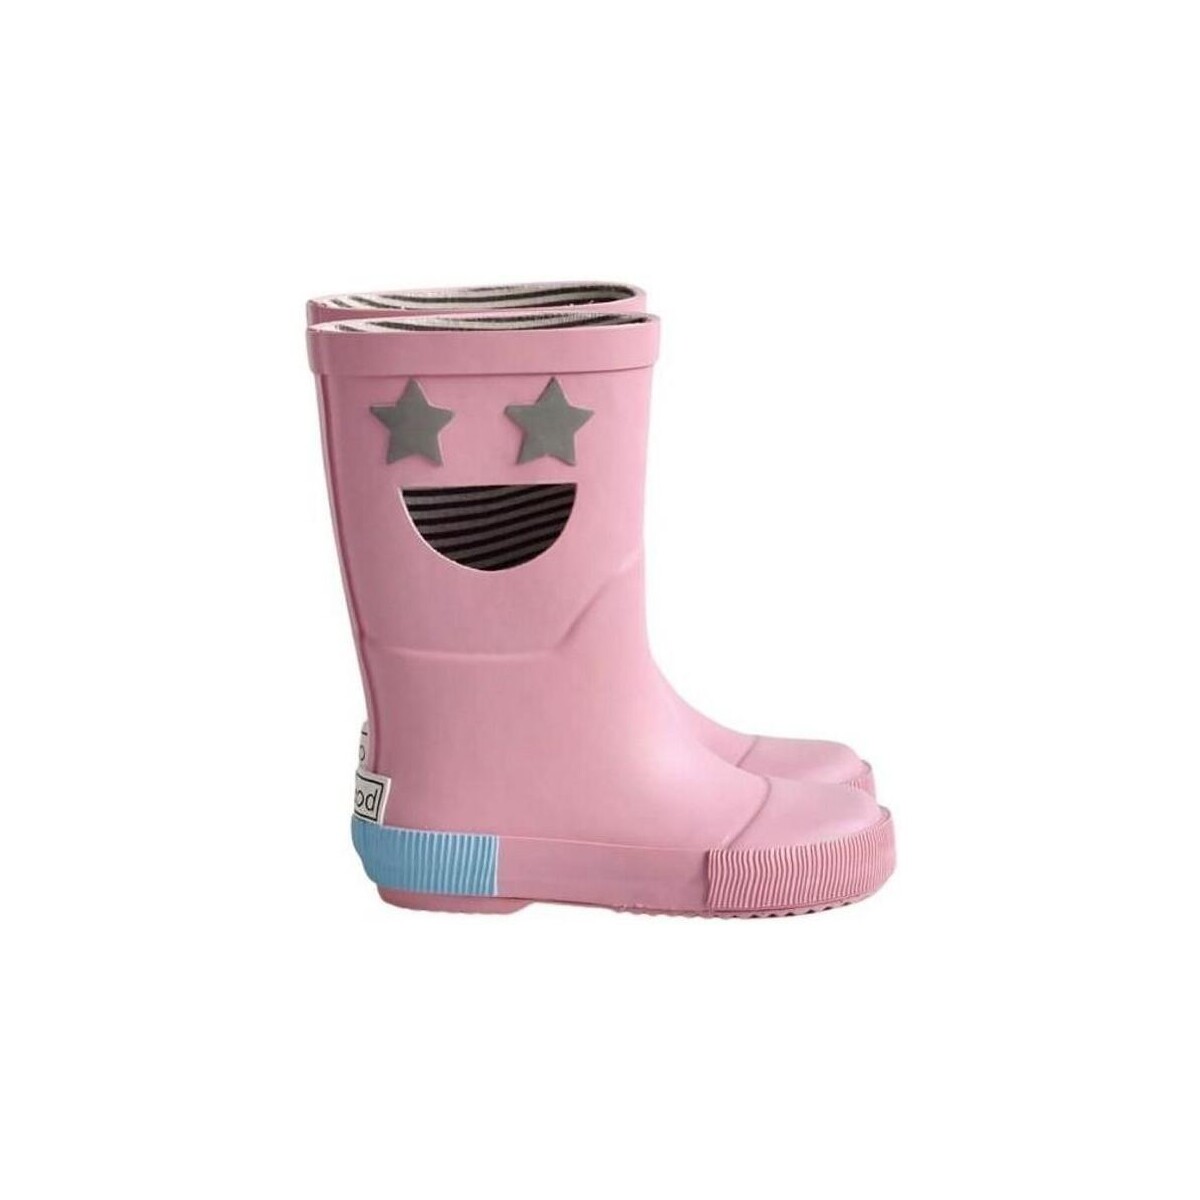 Παπούτσια Παιδί Μπότες Boxbo Wistiti Star Baby Boots - Pink Ροζ